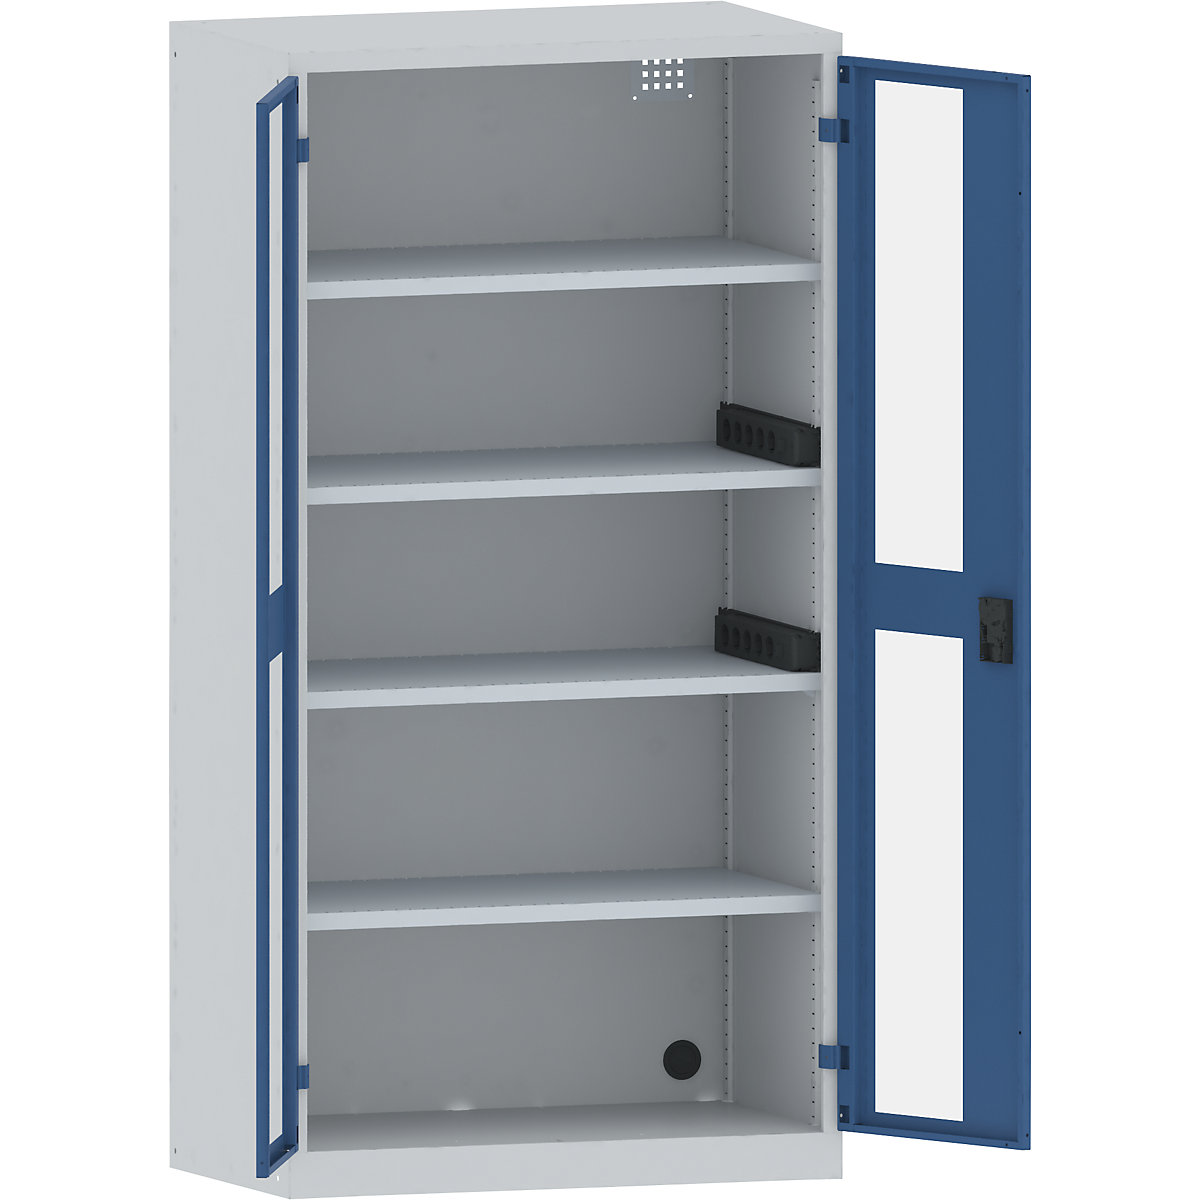 Accuoplaadkast met stroomvoorziening – LISTA, 4 legborden, deuren met zichtvenster, 2 contactdooslijsten op de zijkant, grijs/blauw-30